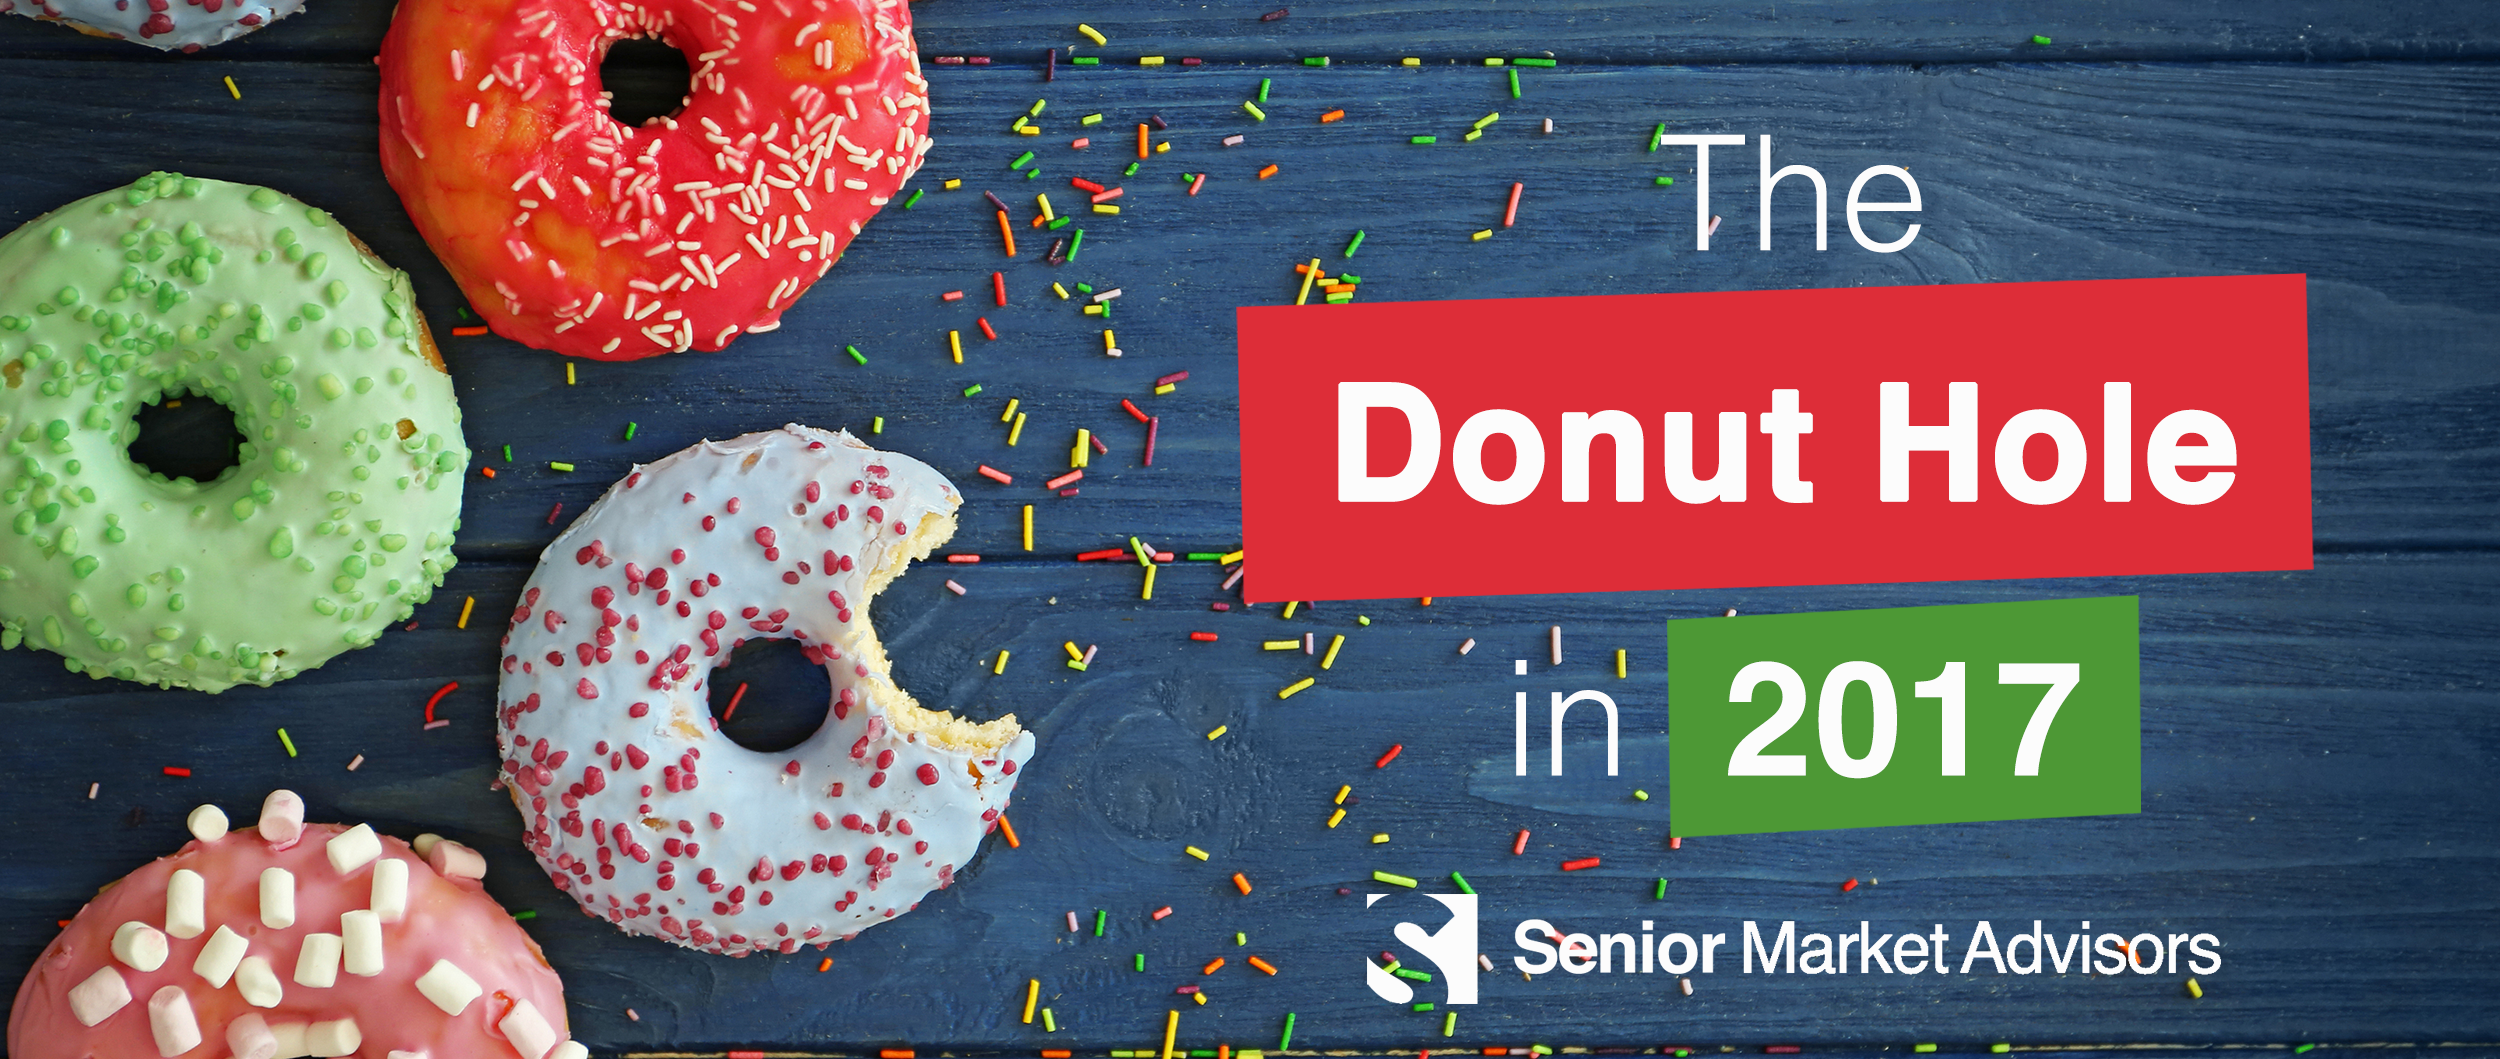 The Donut Hole In 2017 | Senior Market Advisors